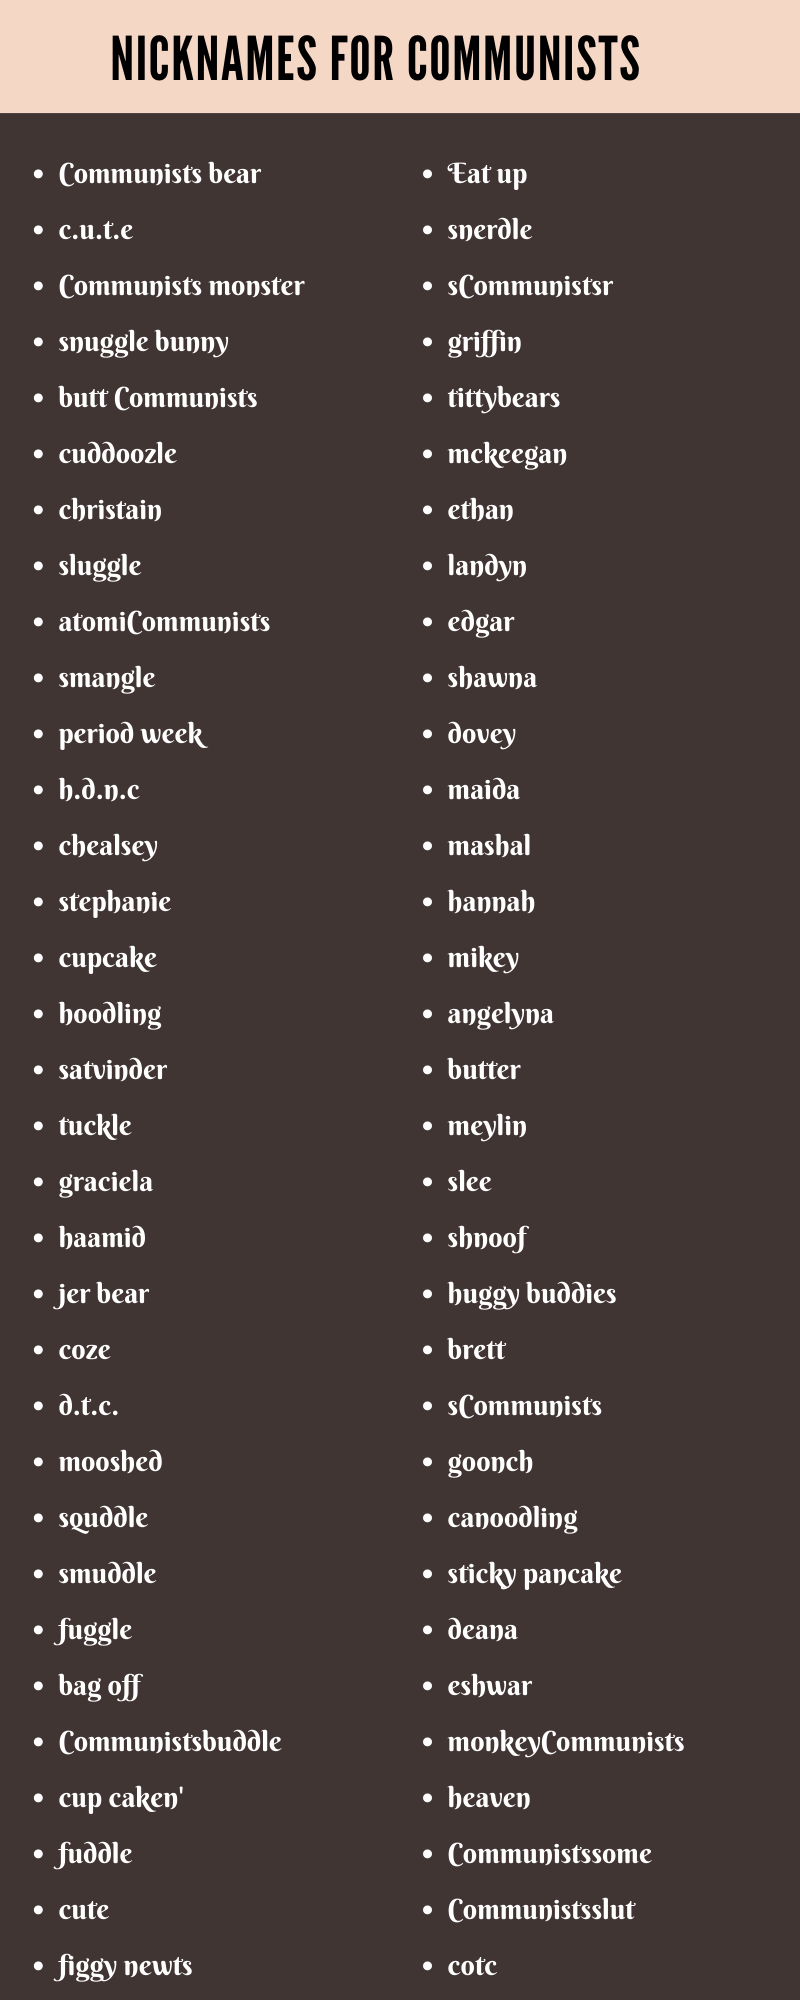 Nicknames For Communists